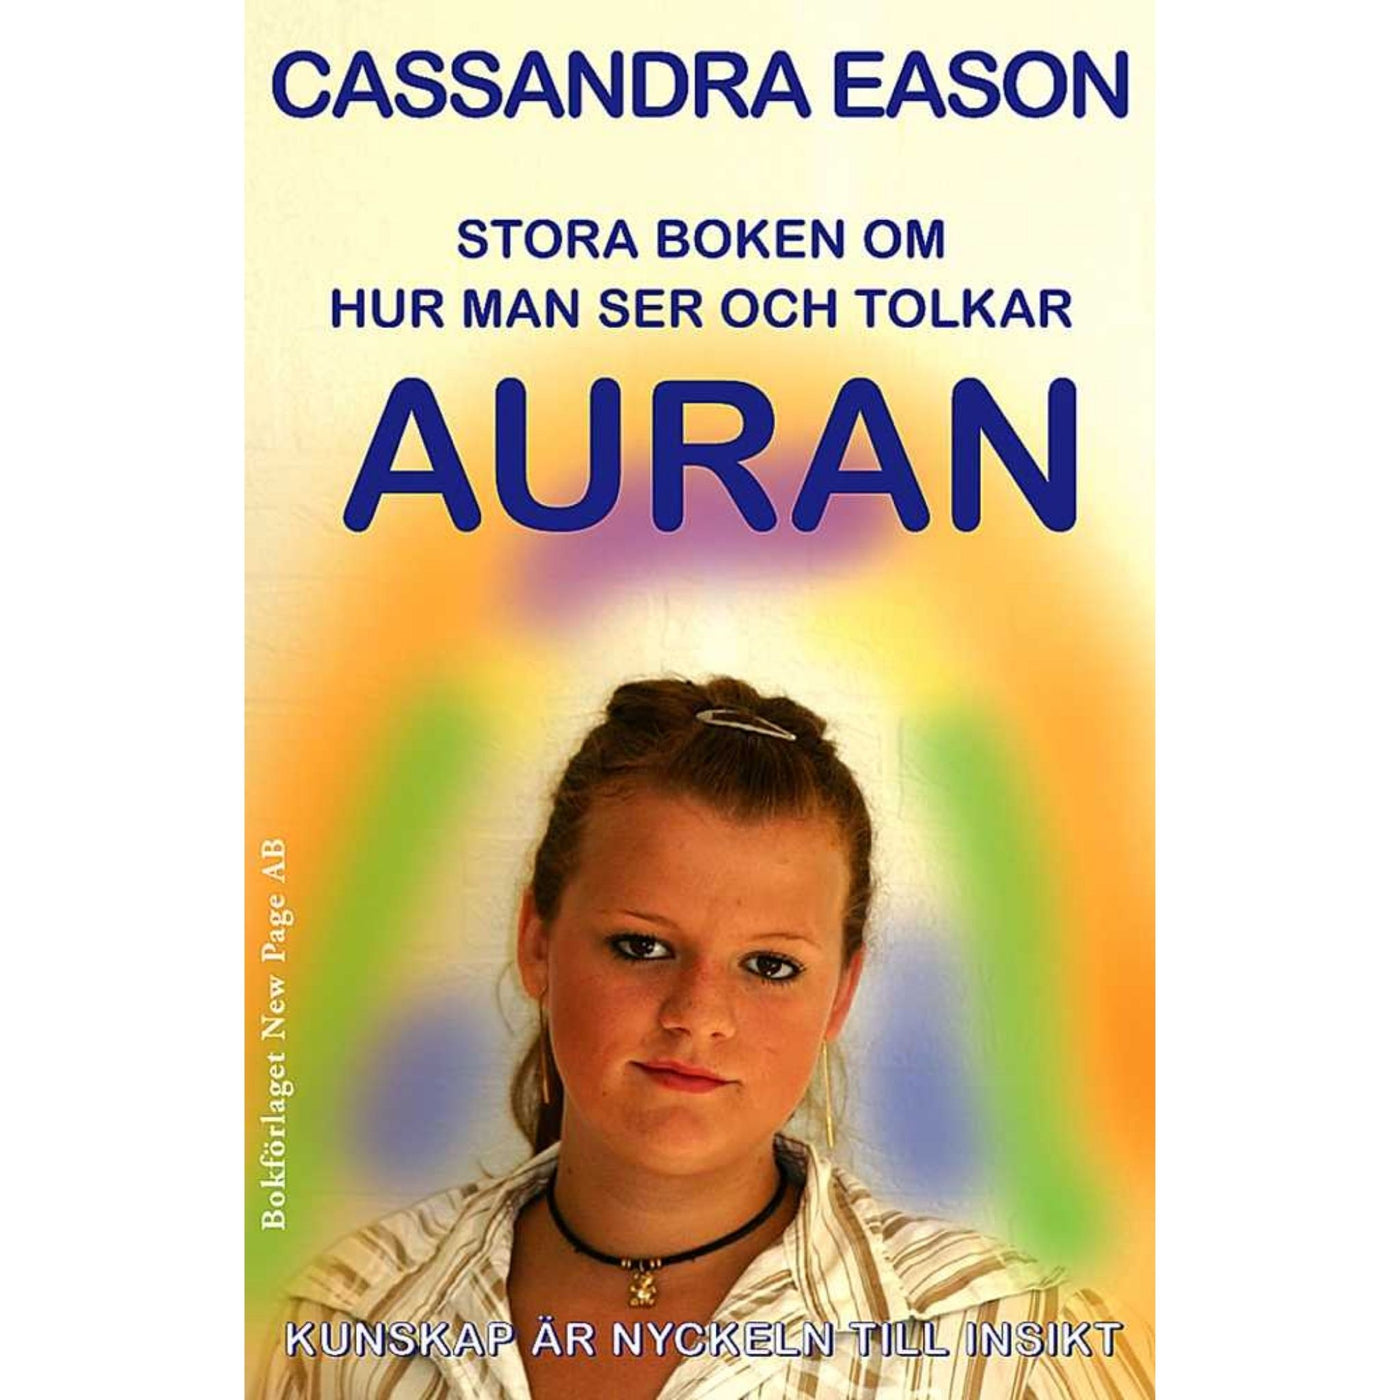 Se och tolka auran - bok av Cassandra Eason